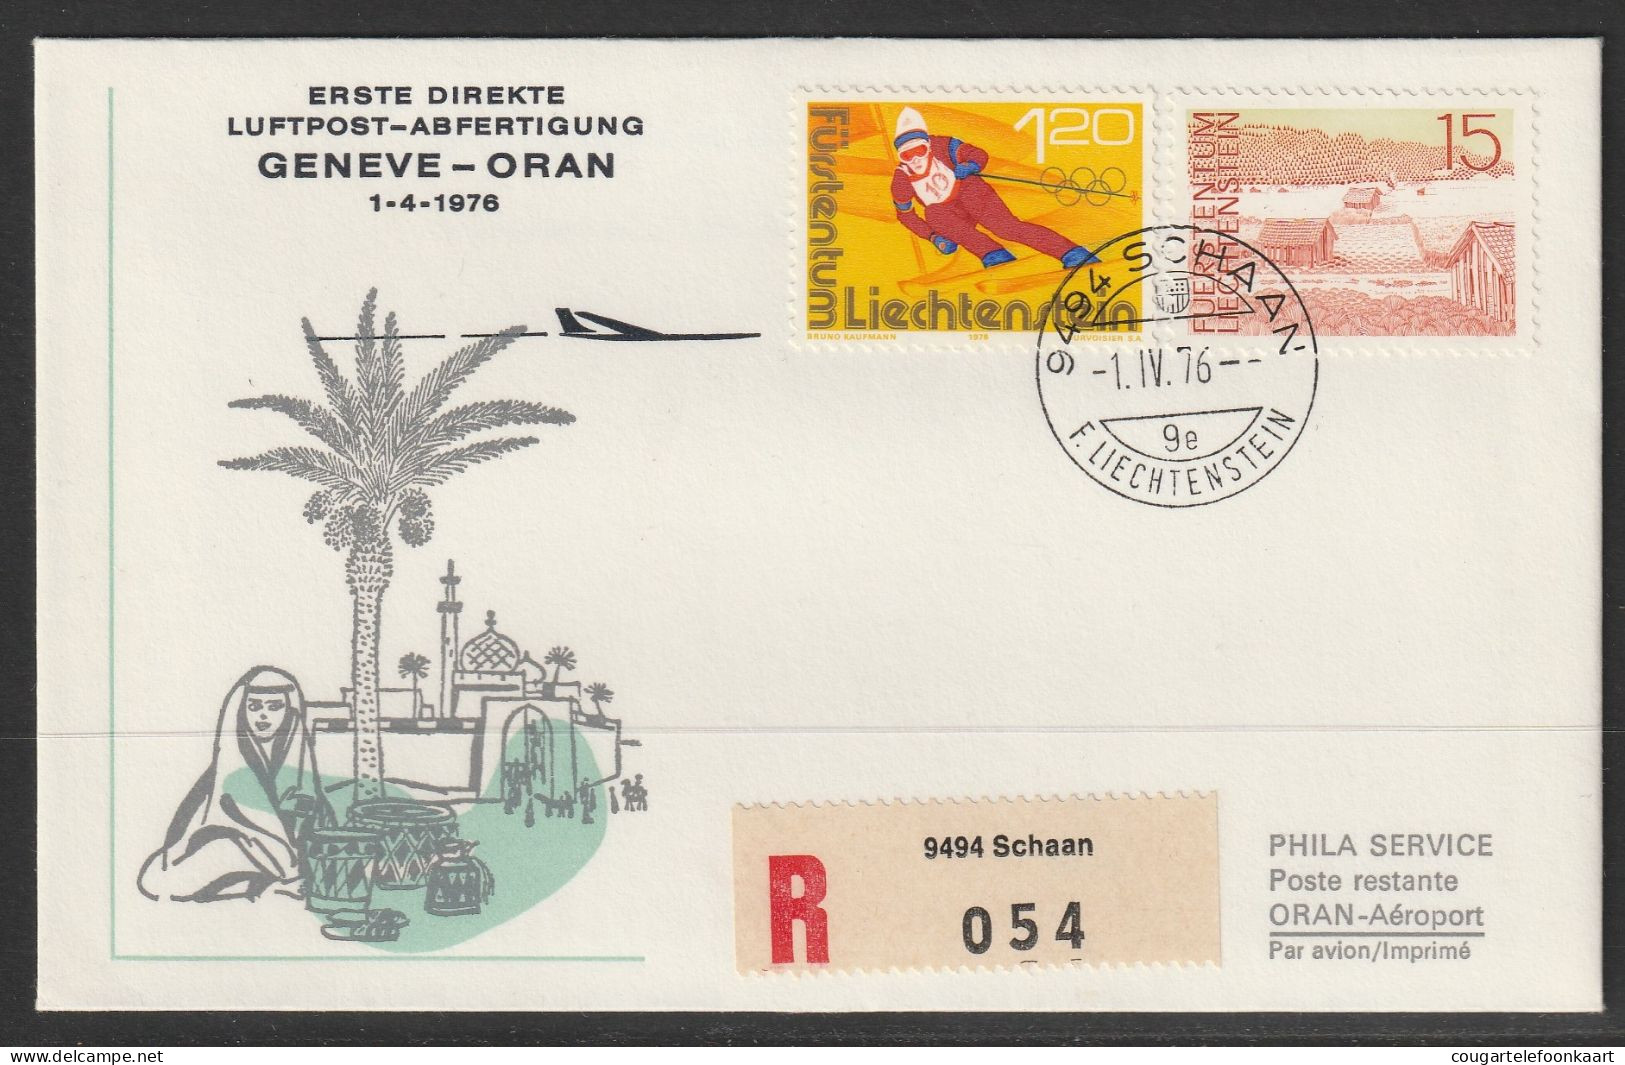 1976, Erste Direkte Luftpost-Abfertigung, Liechtenstein - Oran Alger Algiers - Air Post